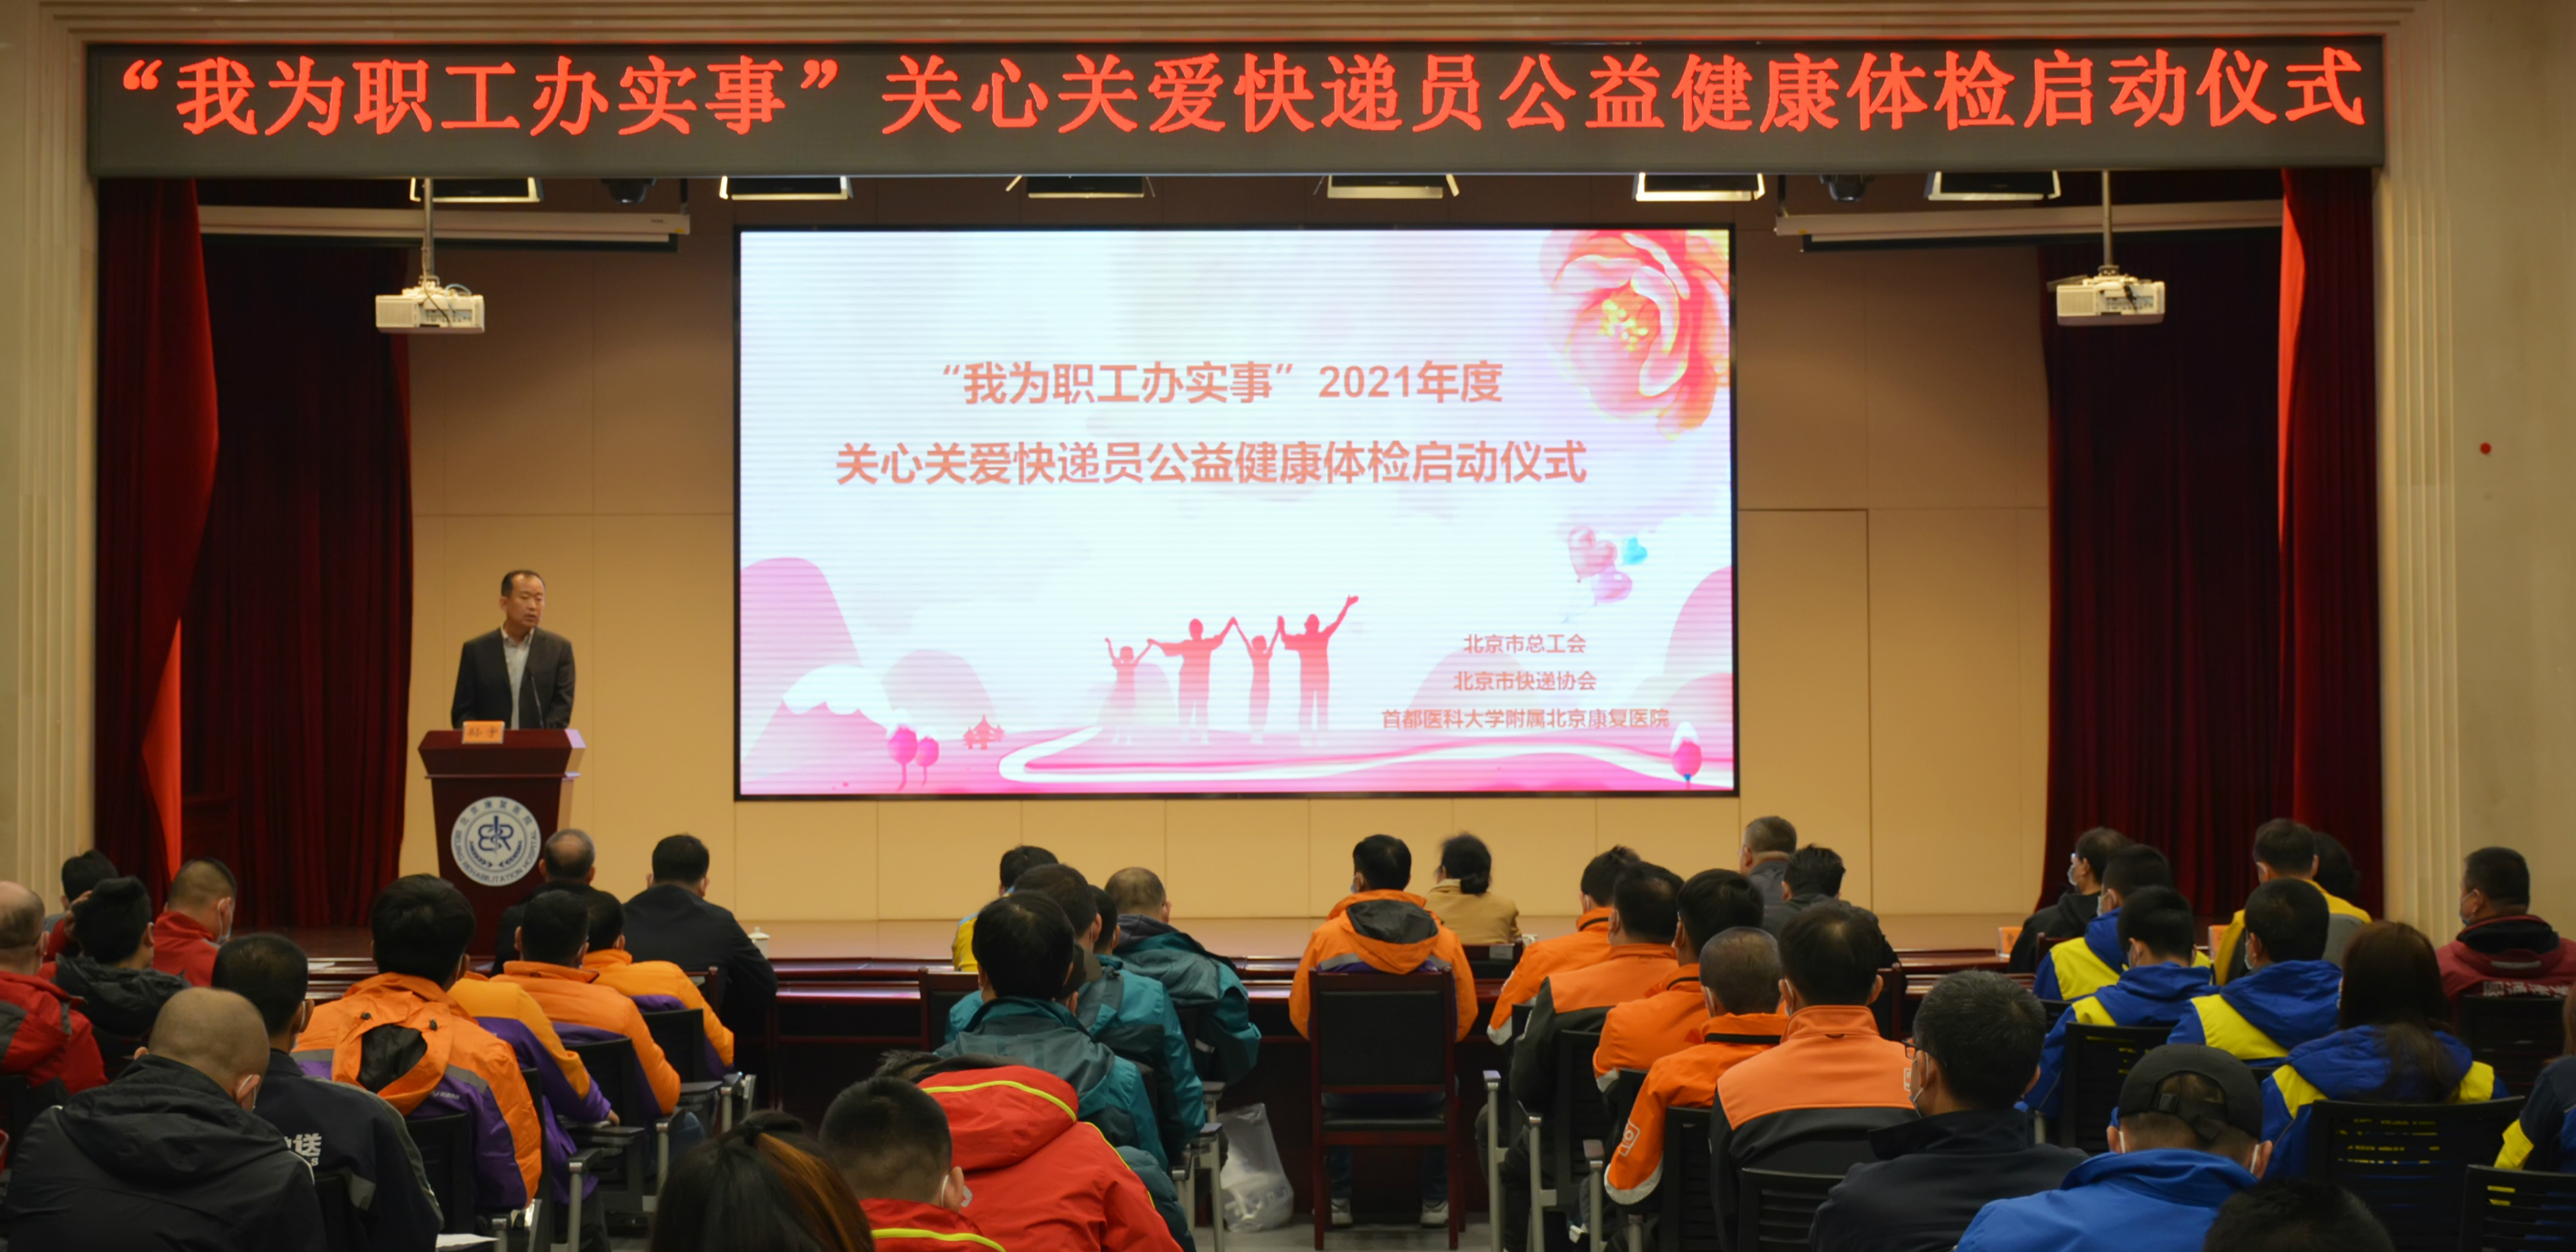 北京市快遞協會聯合北京市總工會舉辦“我為職工辦實事”2021年度關心關愛快遞員公益健康體檢啟動儀式